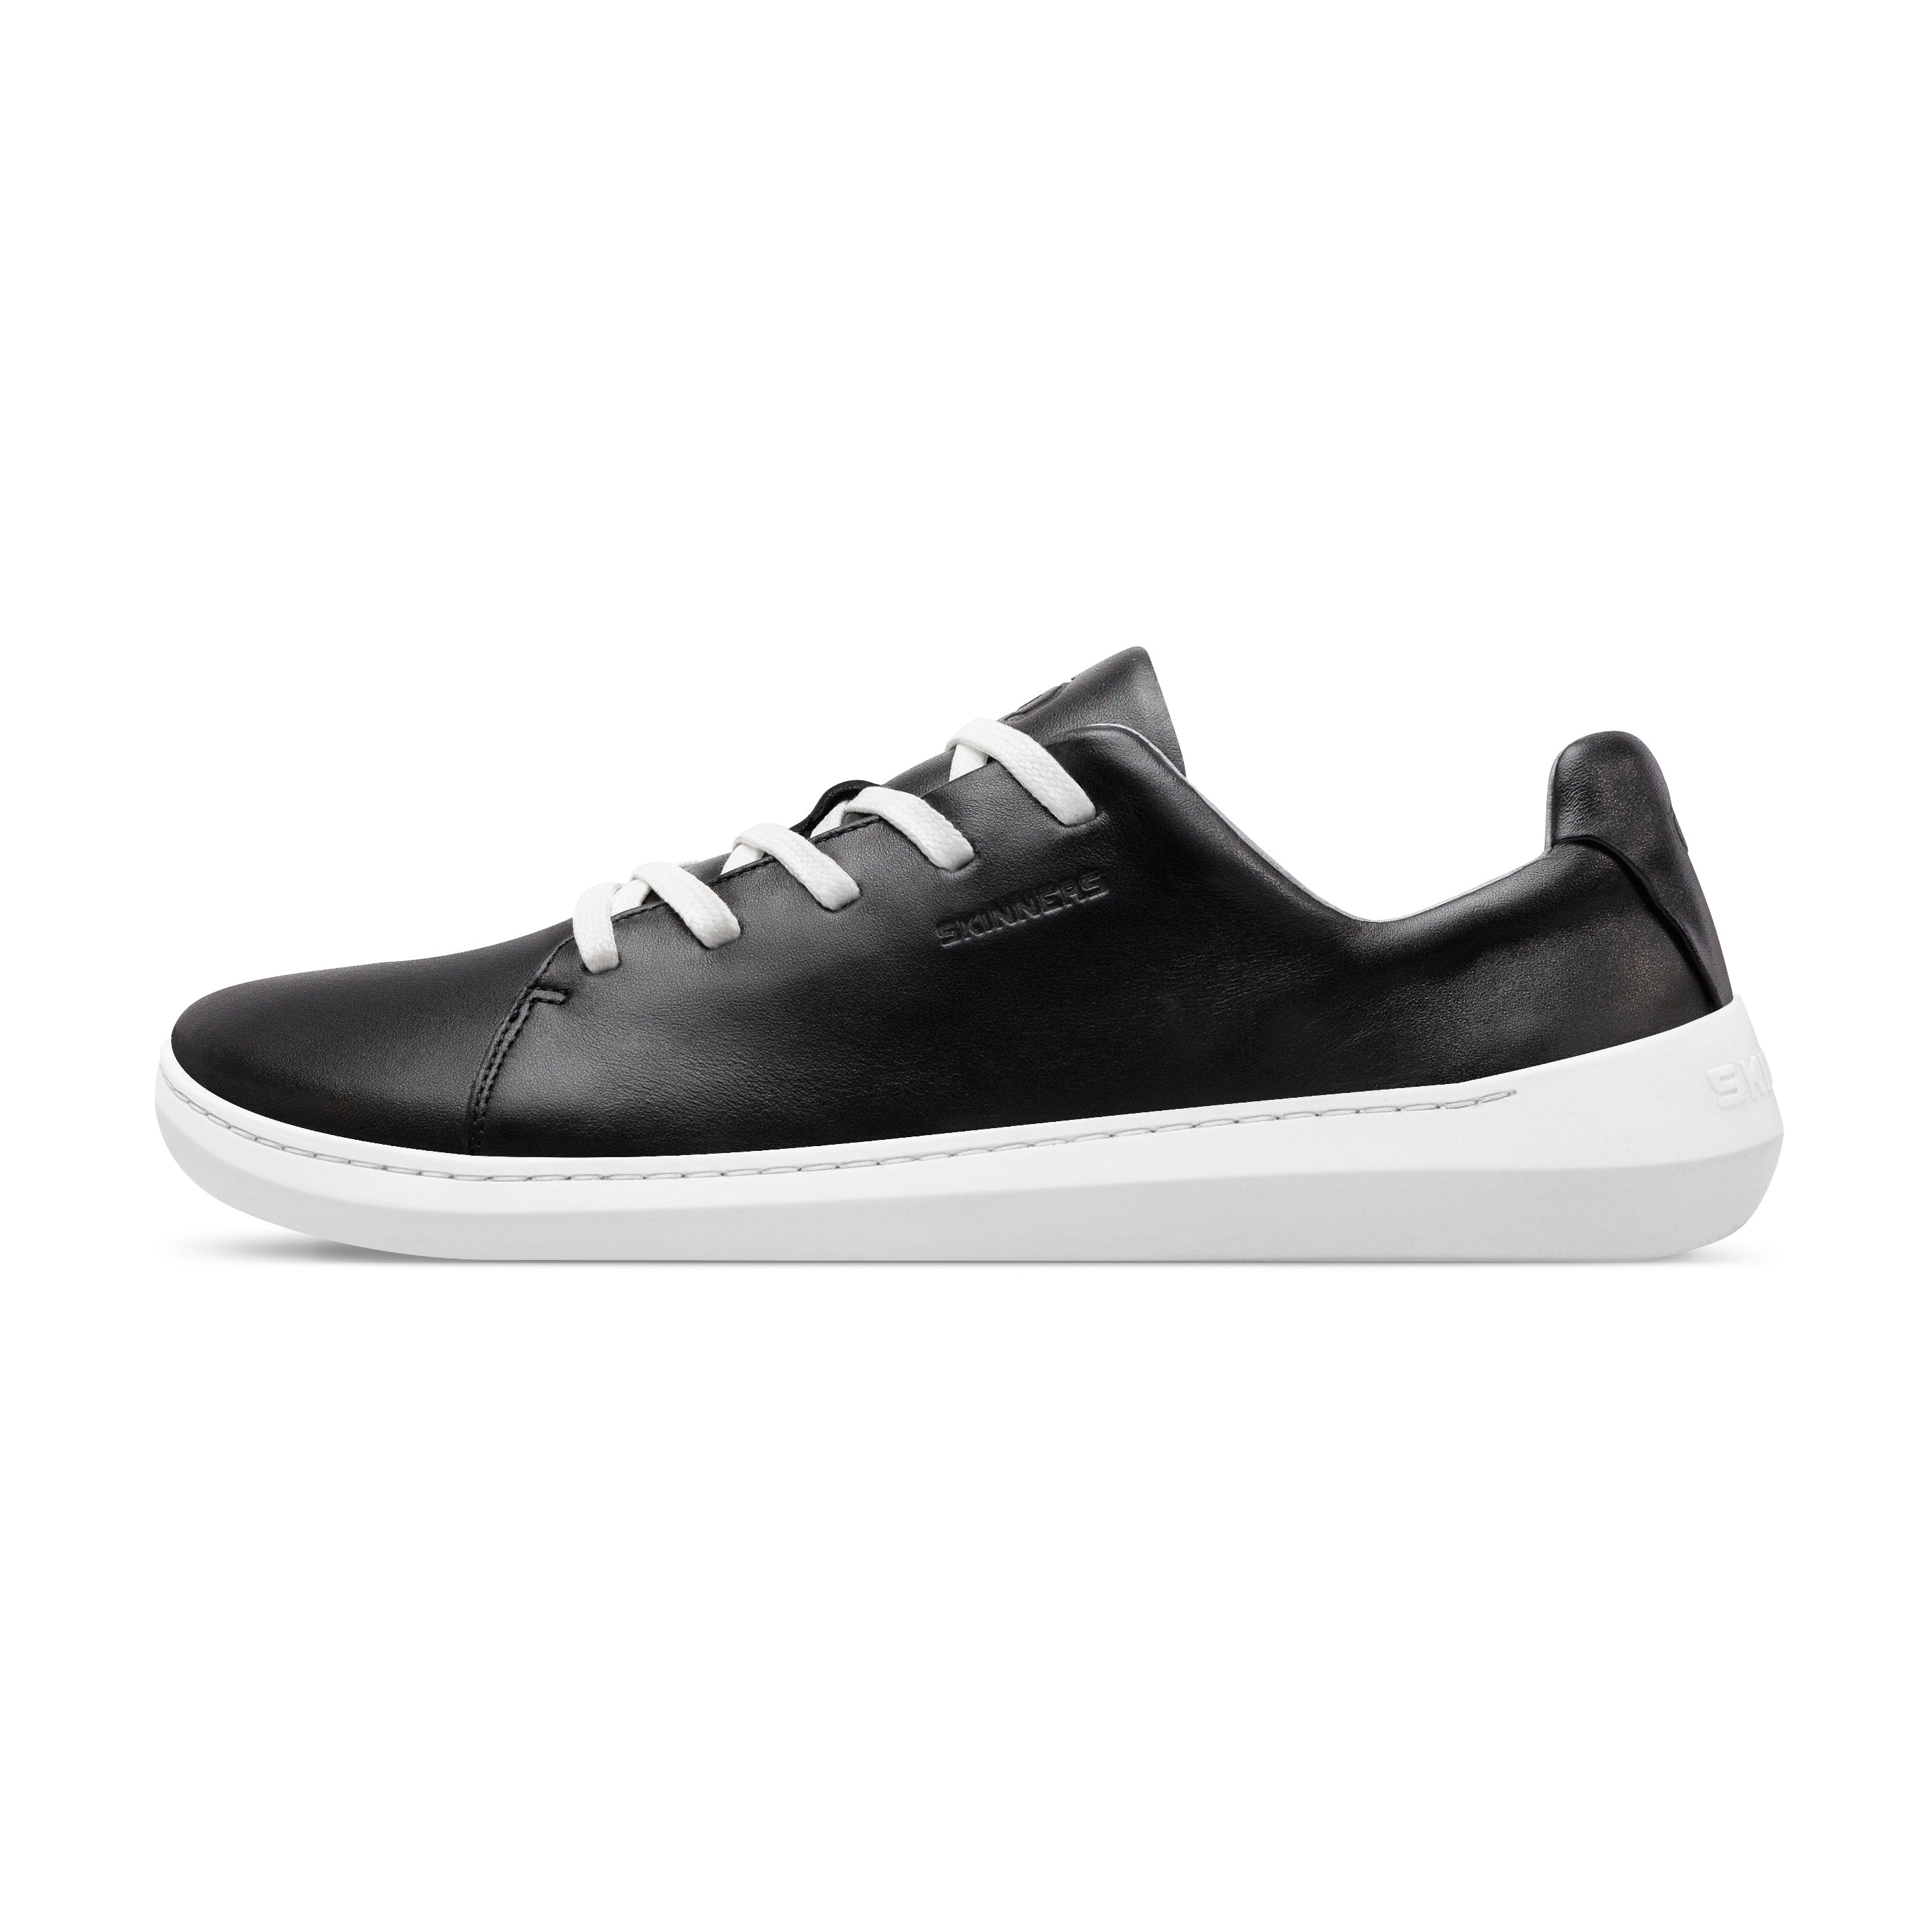 Mærkbare Walker barfods sneakers til kvinder og mænd i farven black / white, yderside